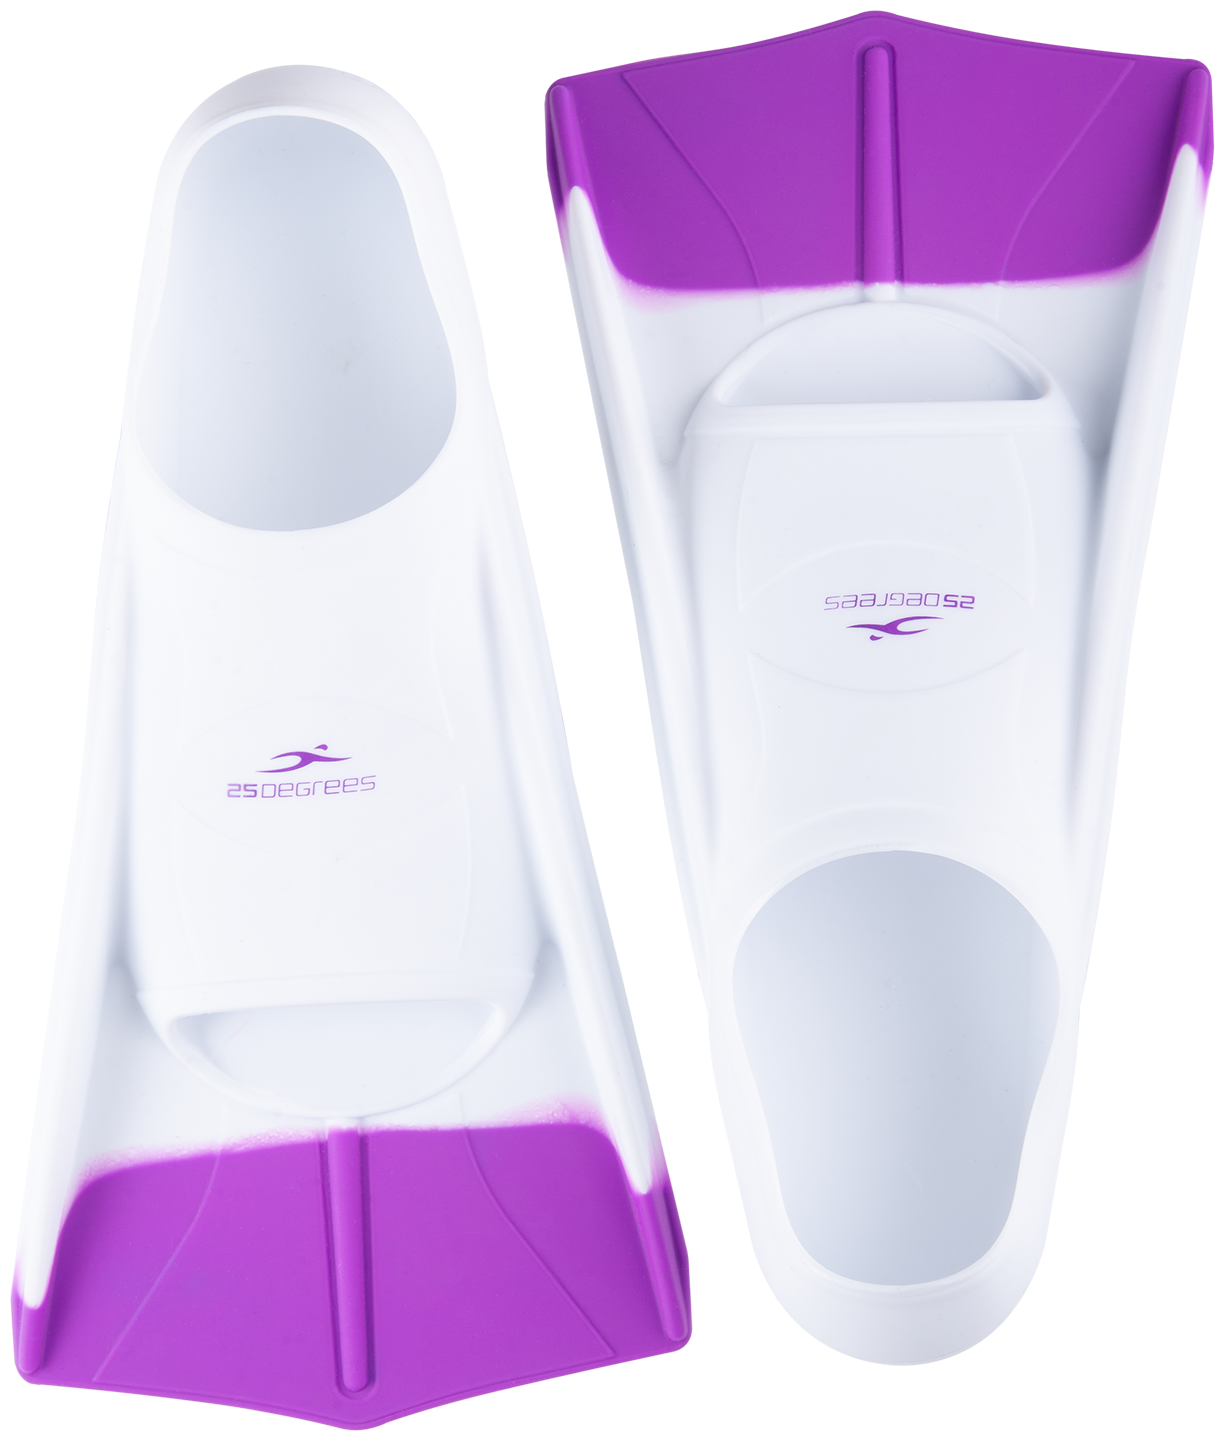 Ласты тренировочные 25degrees Pooljet White/purple, L